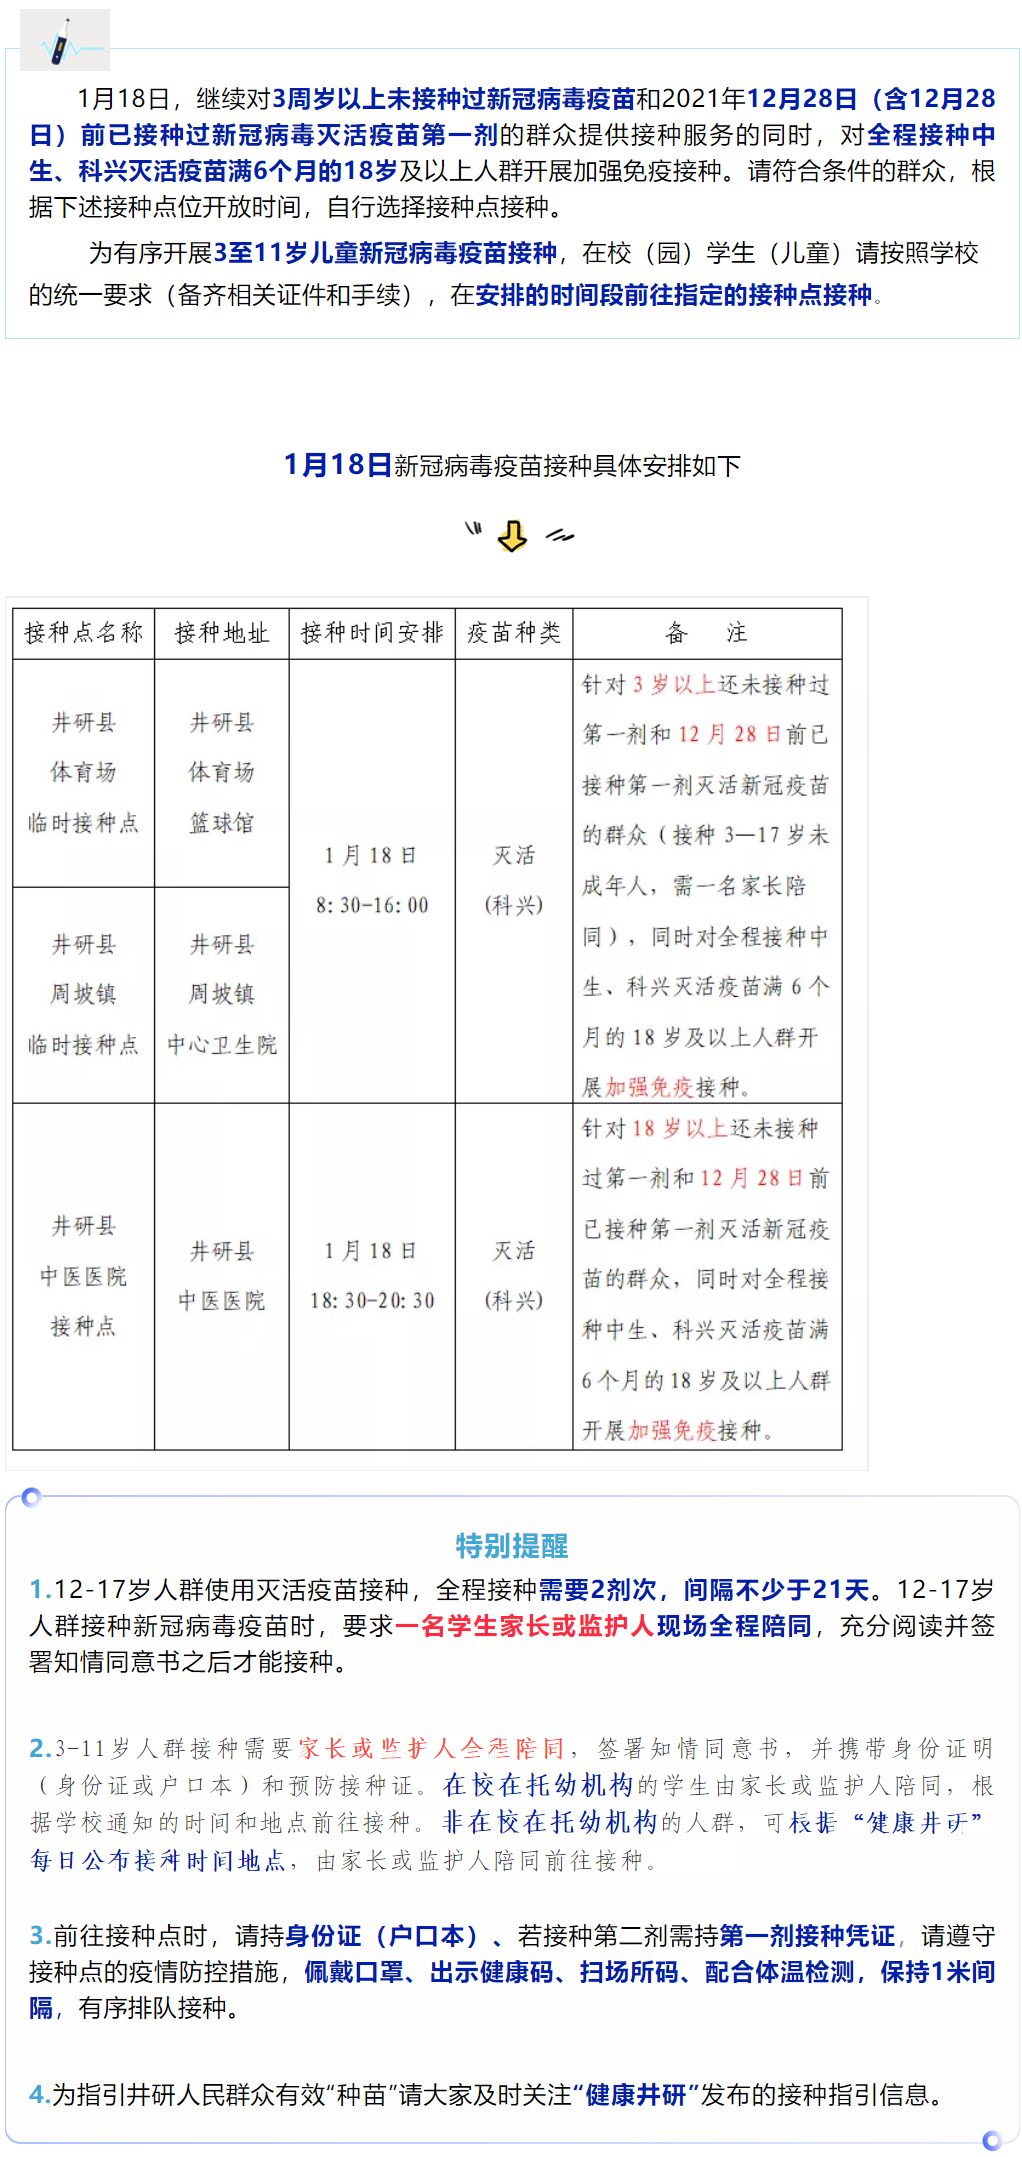 【疫苗接种】井研县1月18号新冠病毒疫苗接种安排